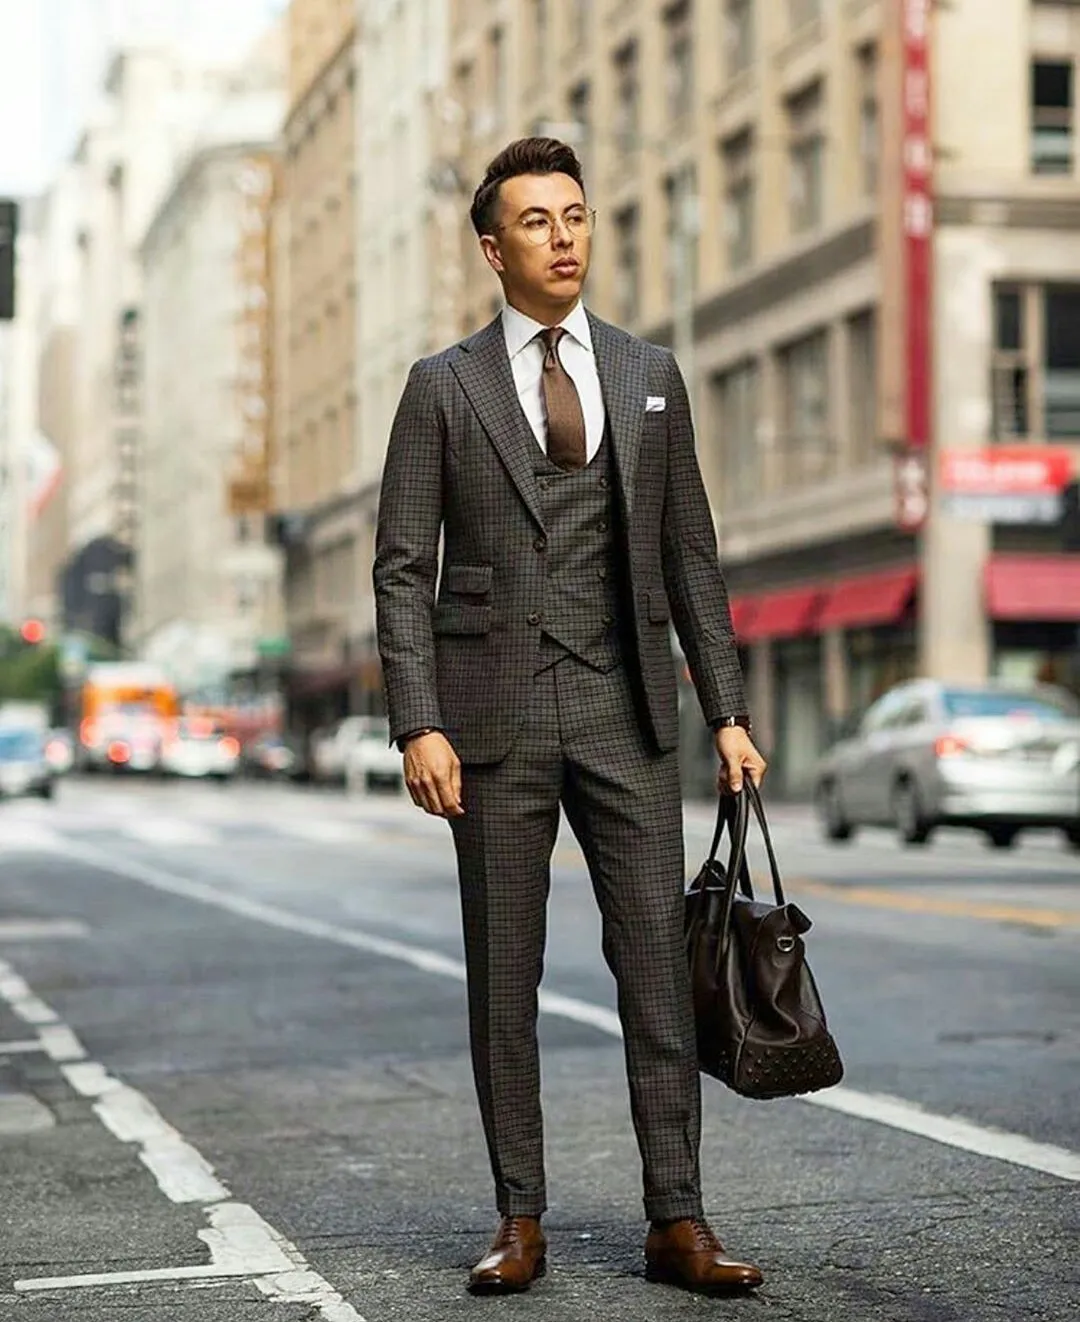 Klasik Ekose Balo Düğün Smokin Slim Fit Blazer Aşınma (Ceket + Yelek + Pantolon) Yaka Erkek Tasarımcı Ceket Örgün Parti Suits Peaked